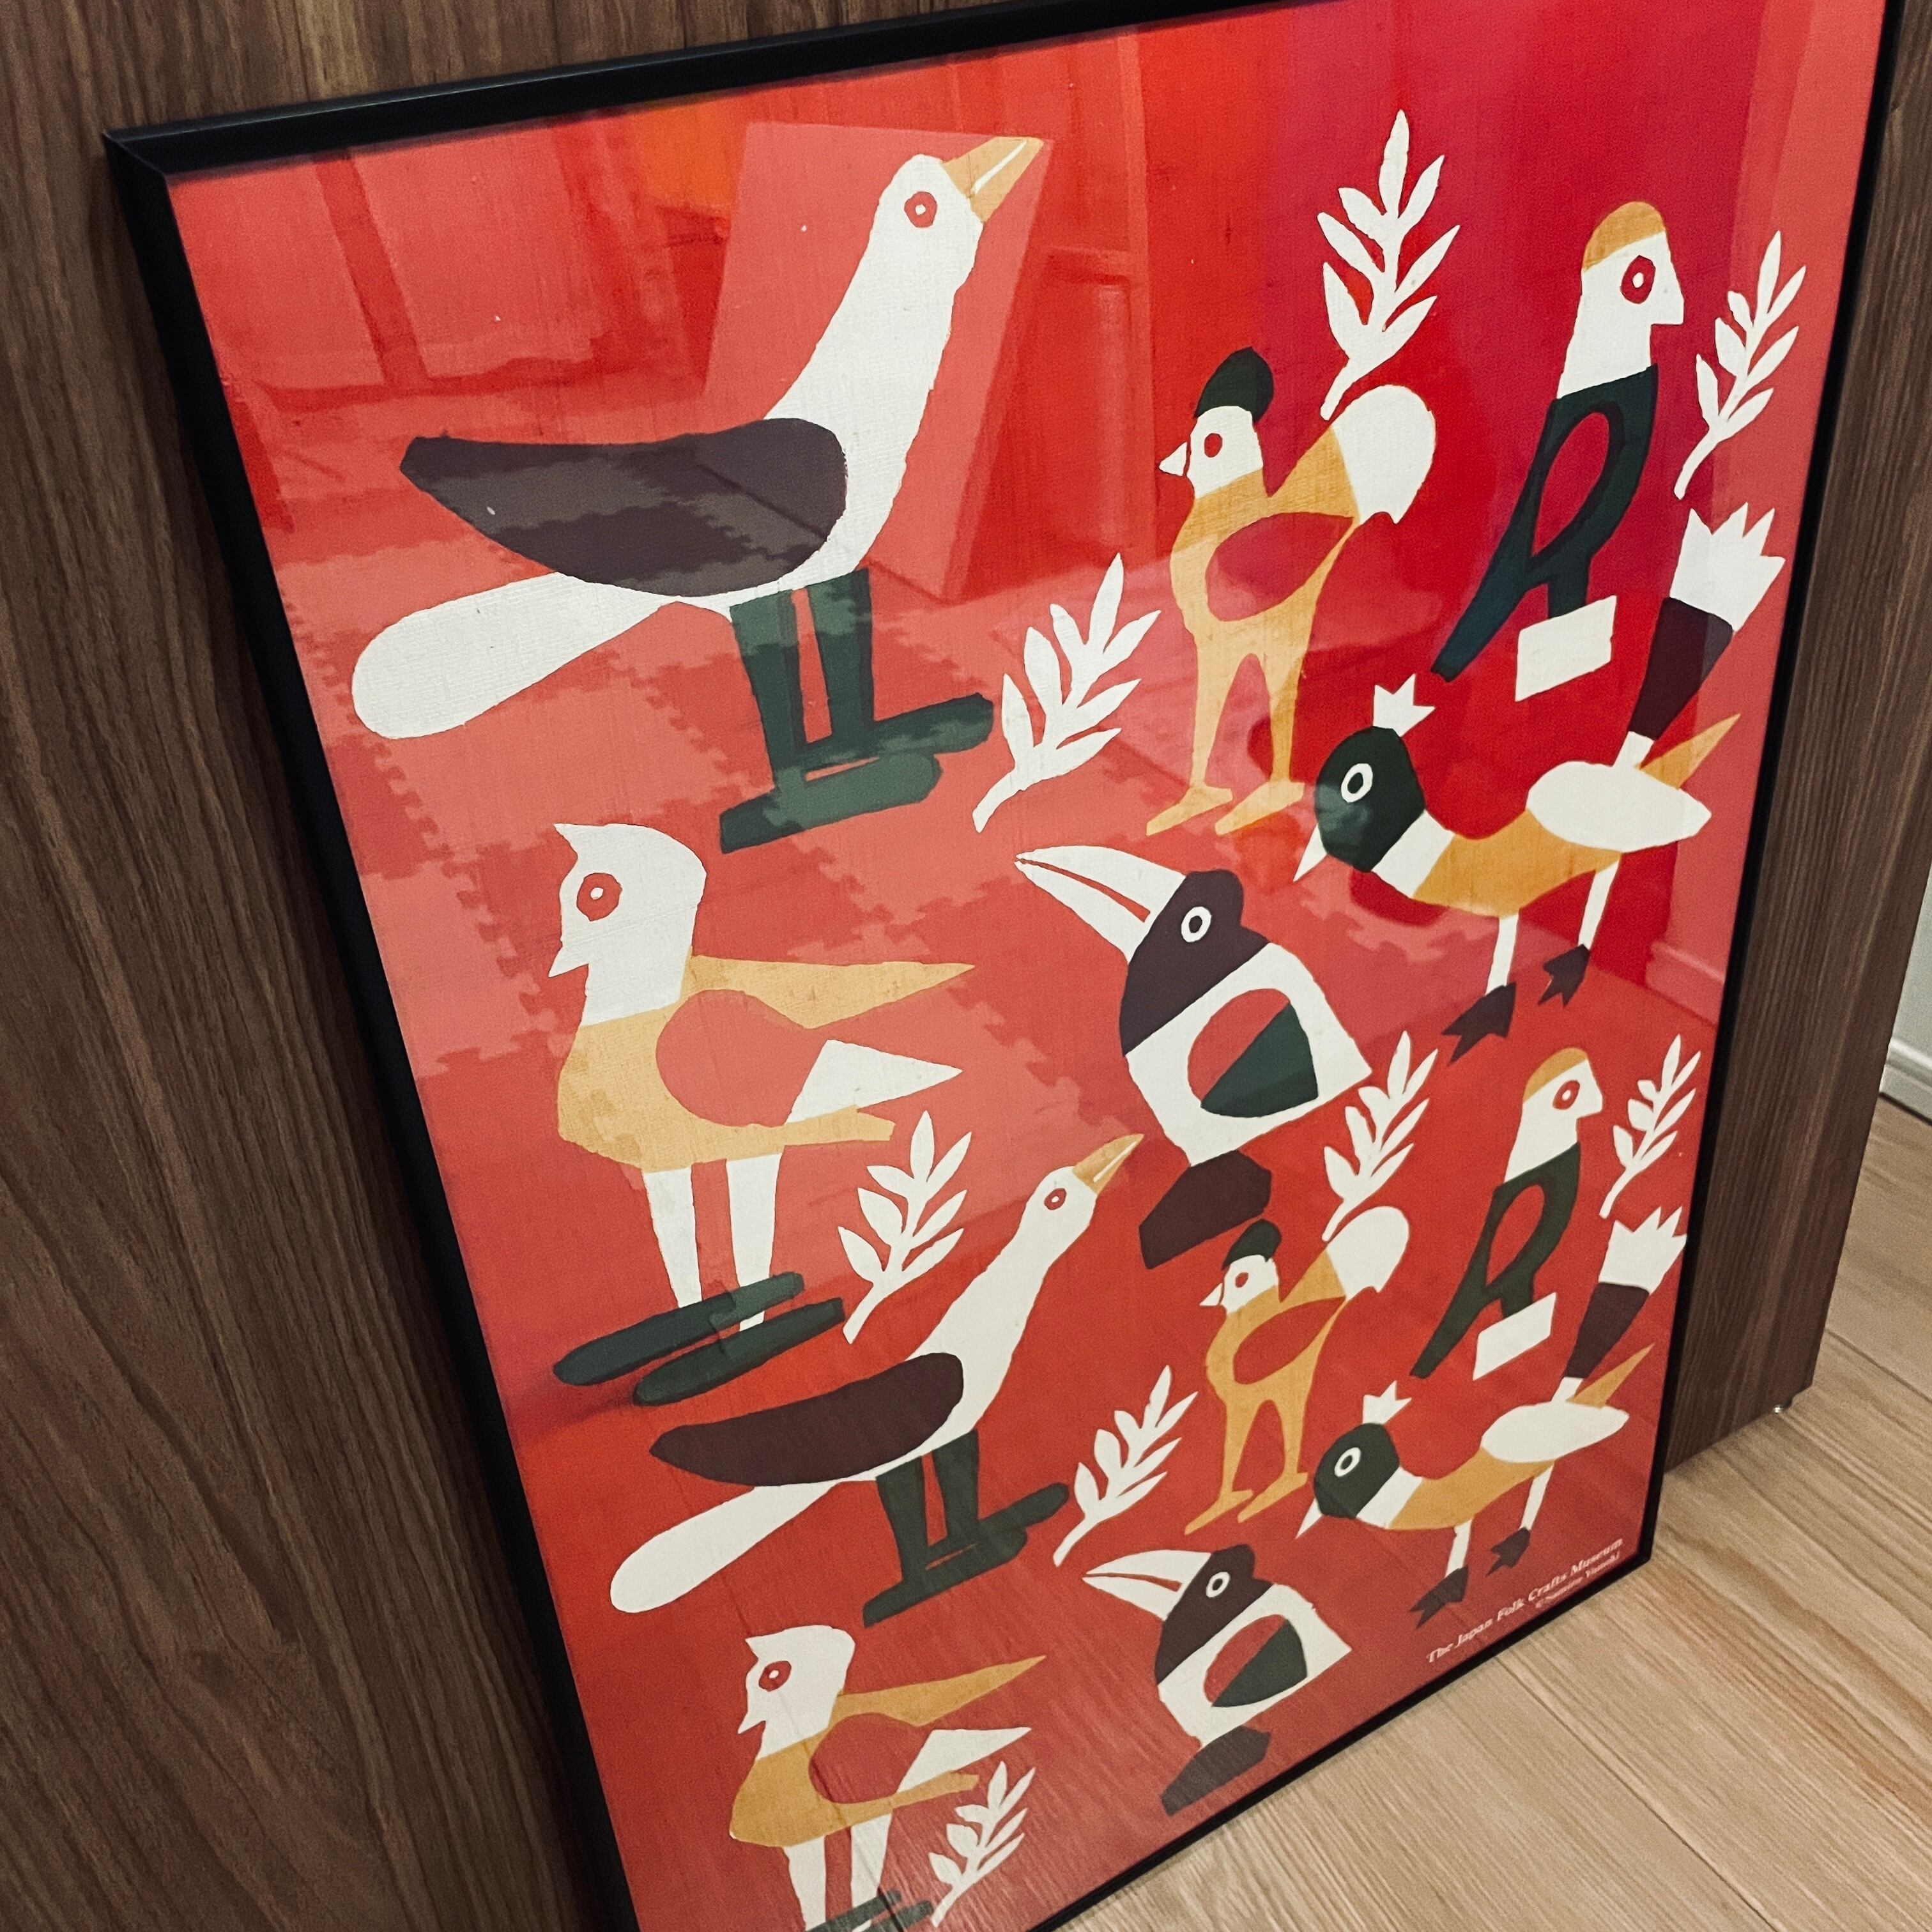 額装付き 柚木沙弥郎 日本民藝館 「喜びの鳥」限定ポスター